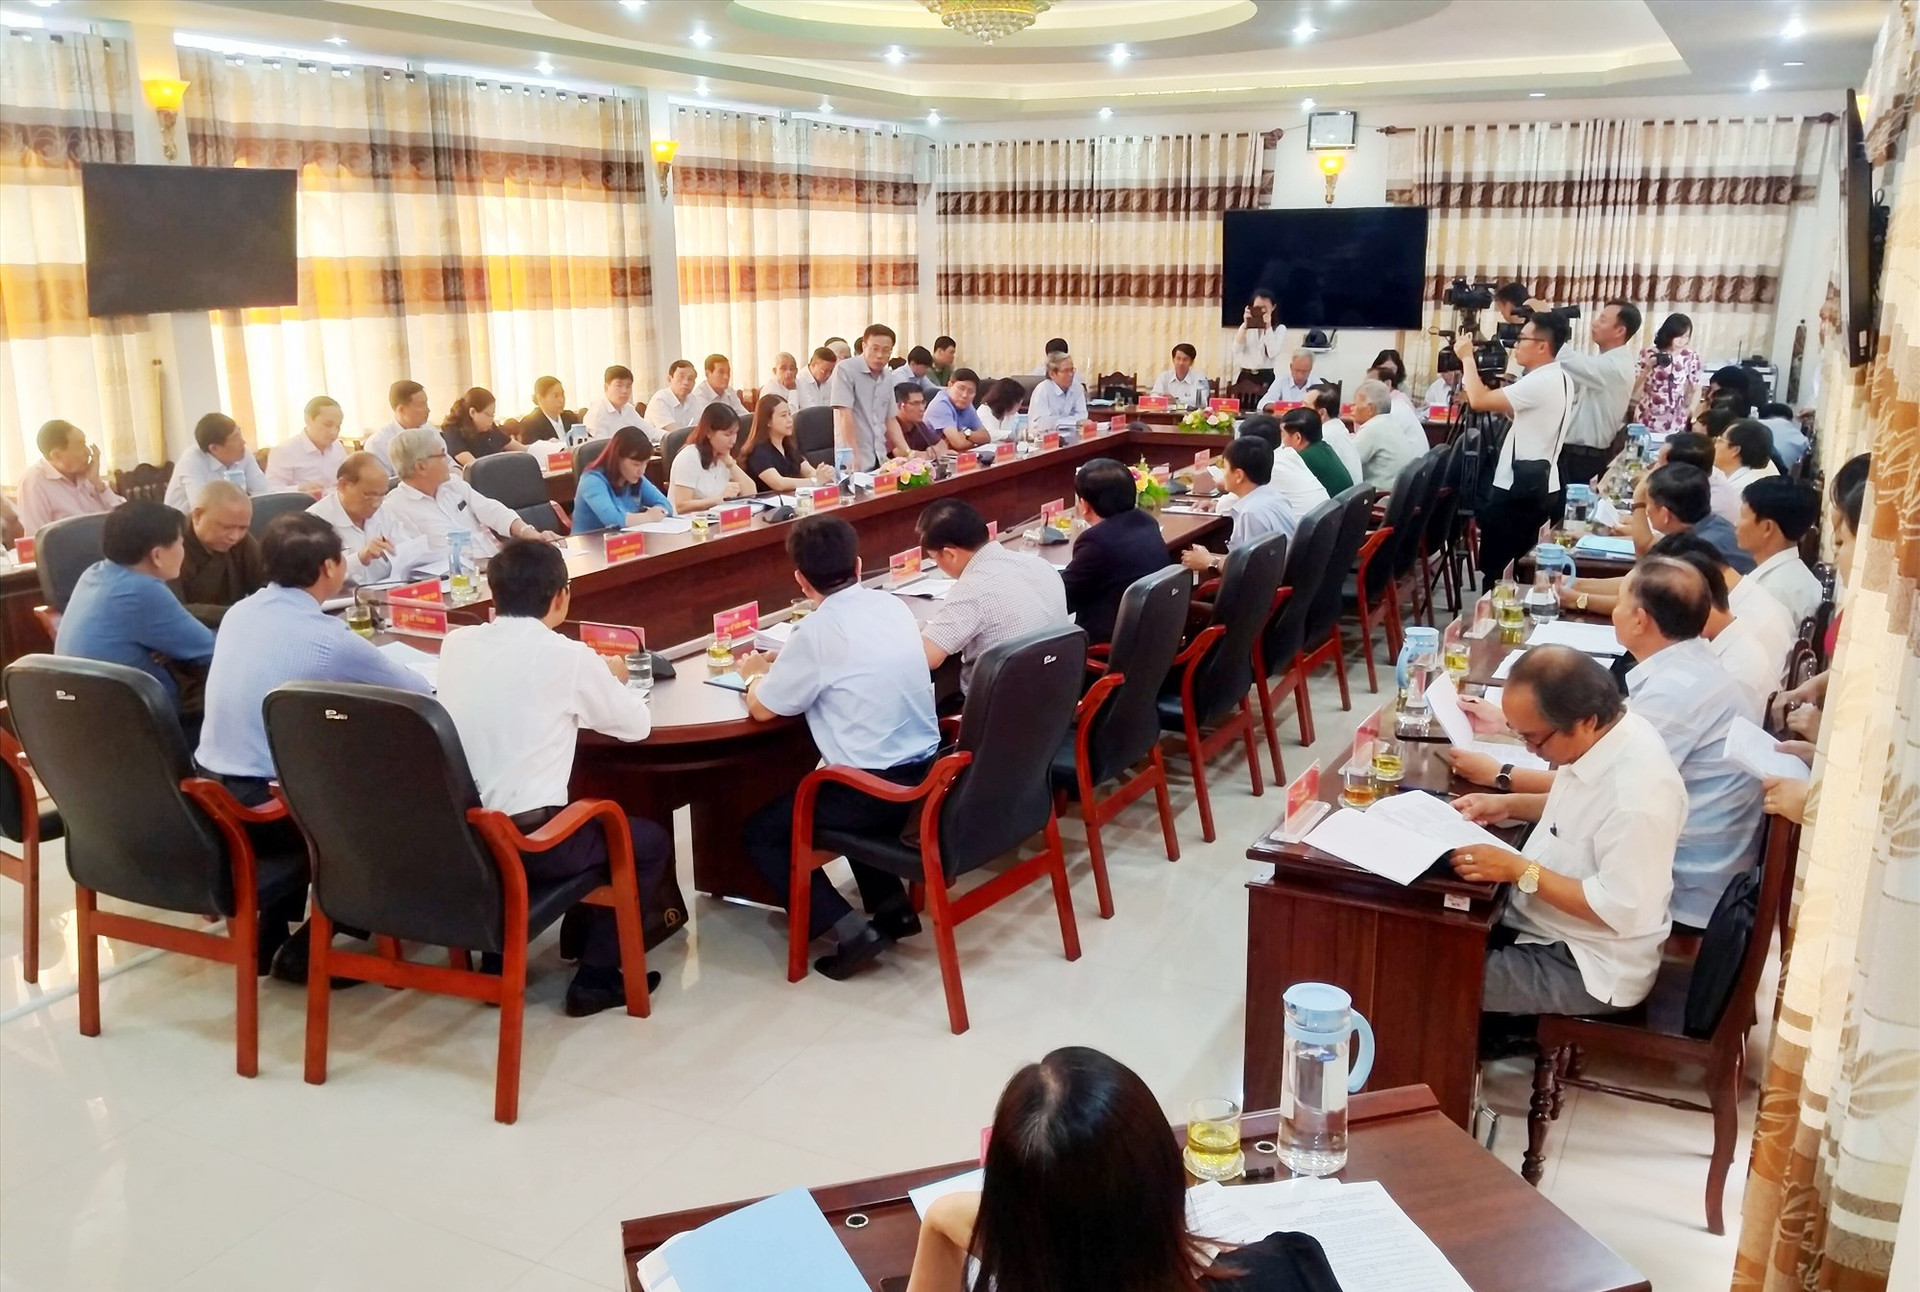 Ngày 16.4.2021, Ban Thường trực Ủy ban MTTQ Việt Nam tỉnh tổ chức hội nghị hiệp thương lần ba thống nhất lập danh sách 10 người đủ tiêu chuẩn ứng cử đại biểu Quốc hội khóa XV. Ảnh: ĐOAN VINH